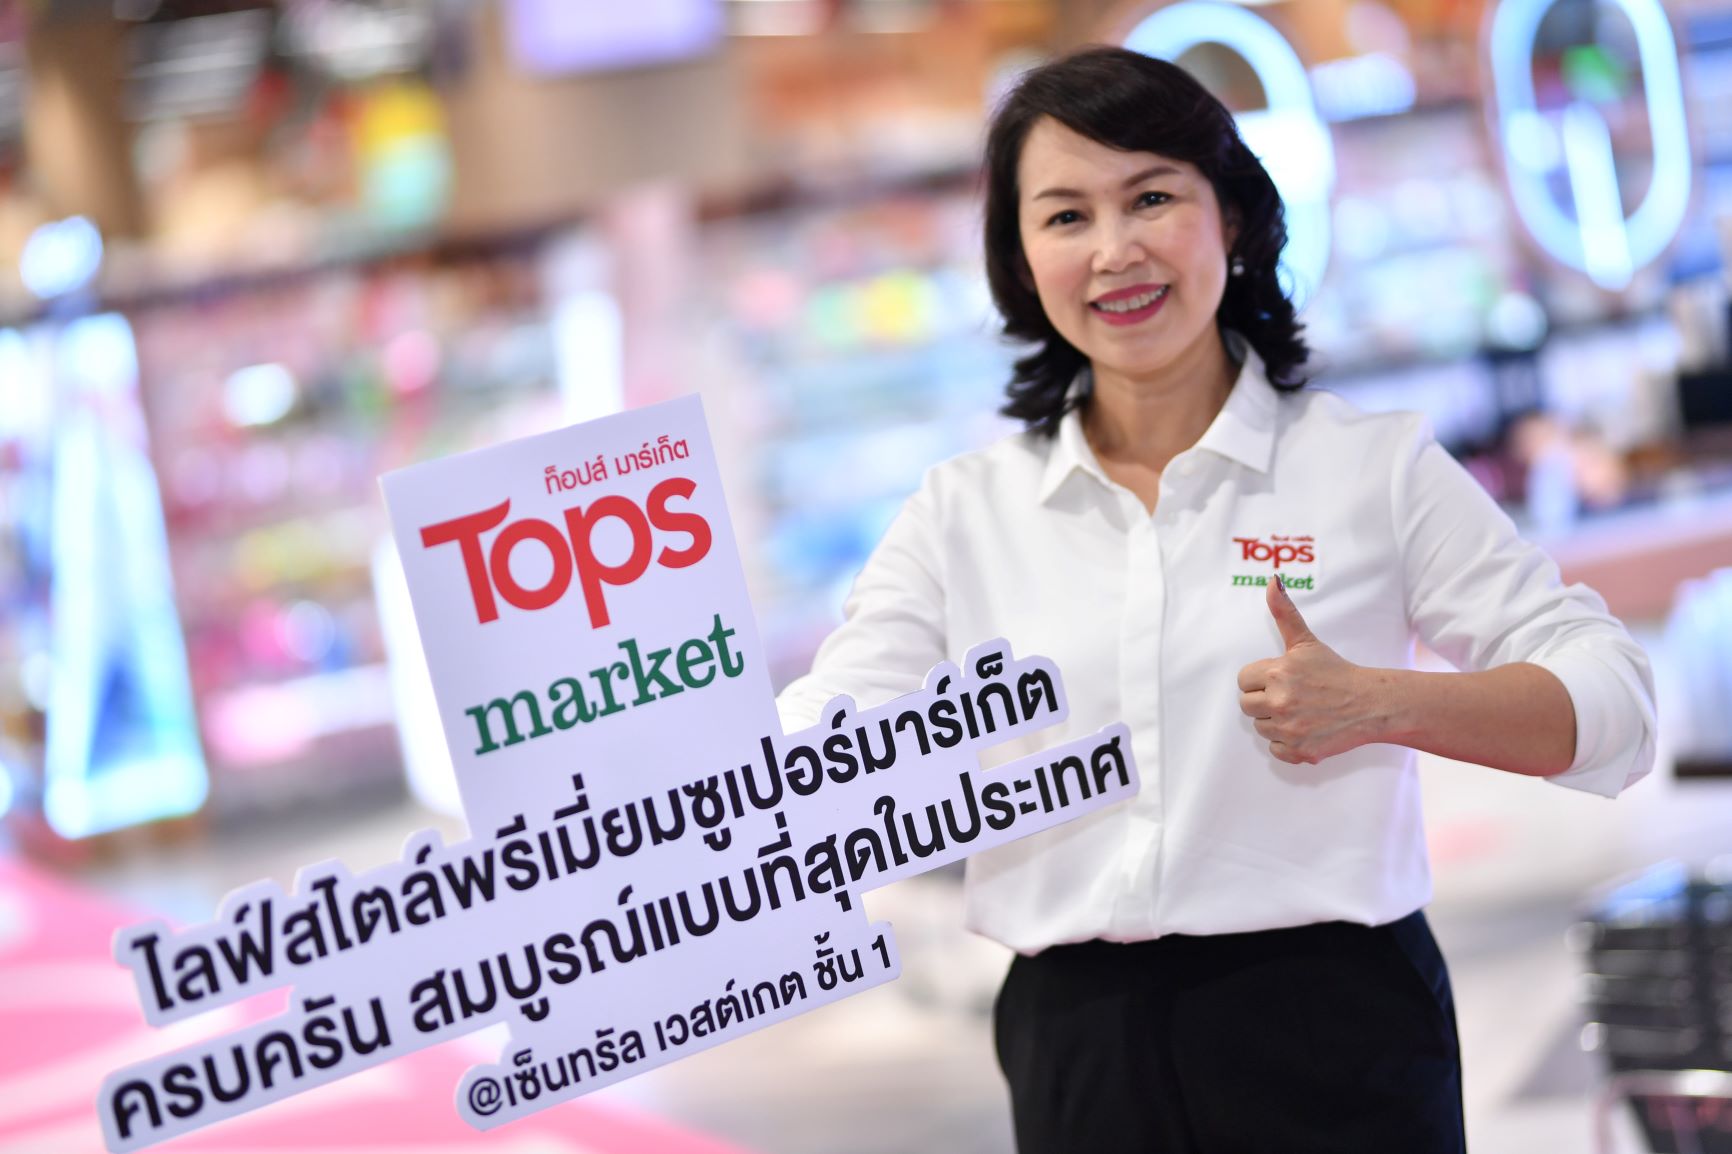 ท็อปส์ มาร์เก็ต สาขาเวสต์เกต พลิกโฉมใหม่ครั้งใหญ่ ยกระดับสู่ไลฟ์สไตล์พรีเมี่ยมซูเปอร์มาร์เก็ตสมบูรณ์แบบที่สุดในประเทศไทย